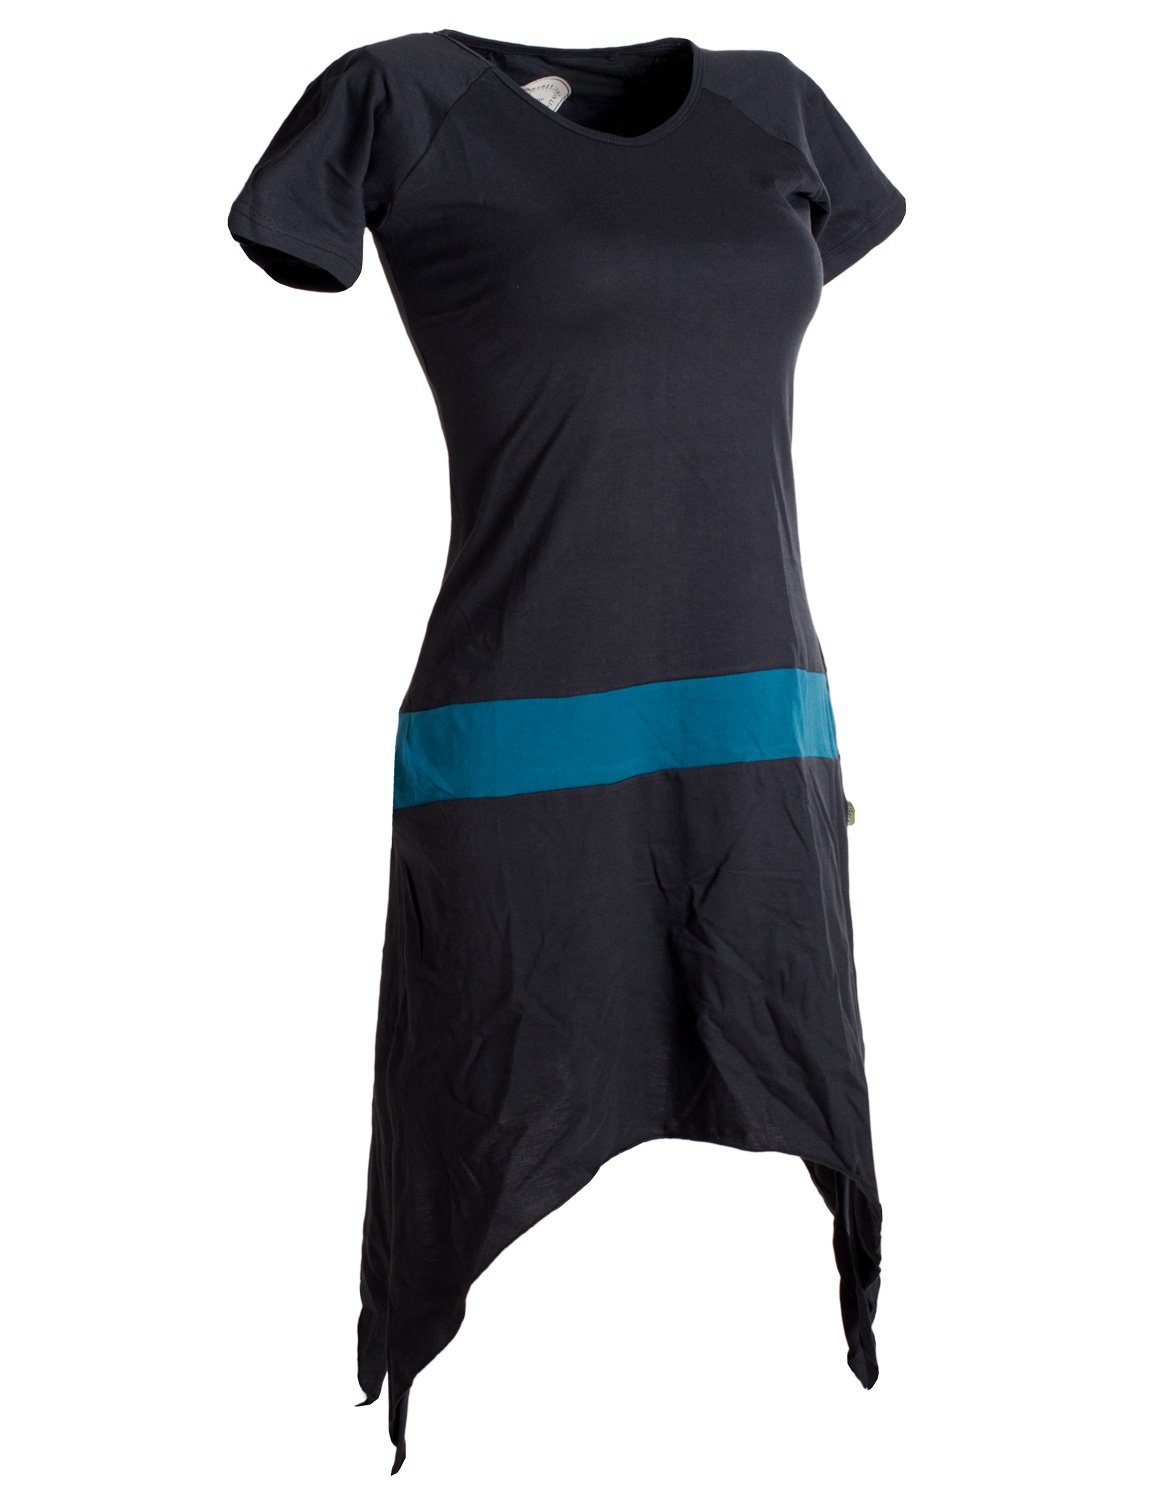 Vishes Sommerkleid Einfaches kurzärmliges Style Hippie aus Longshirt, Baumwolle Tunika, Zipfelkleid schwarz-türkis